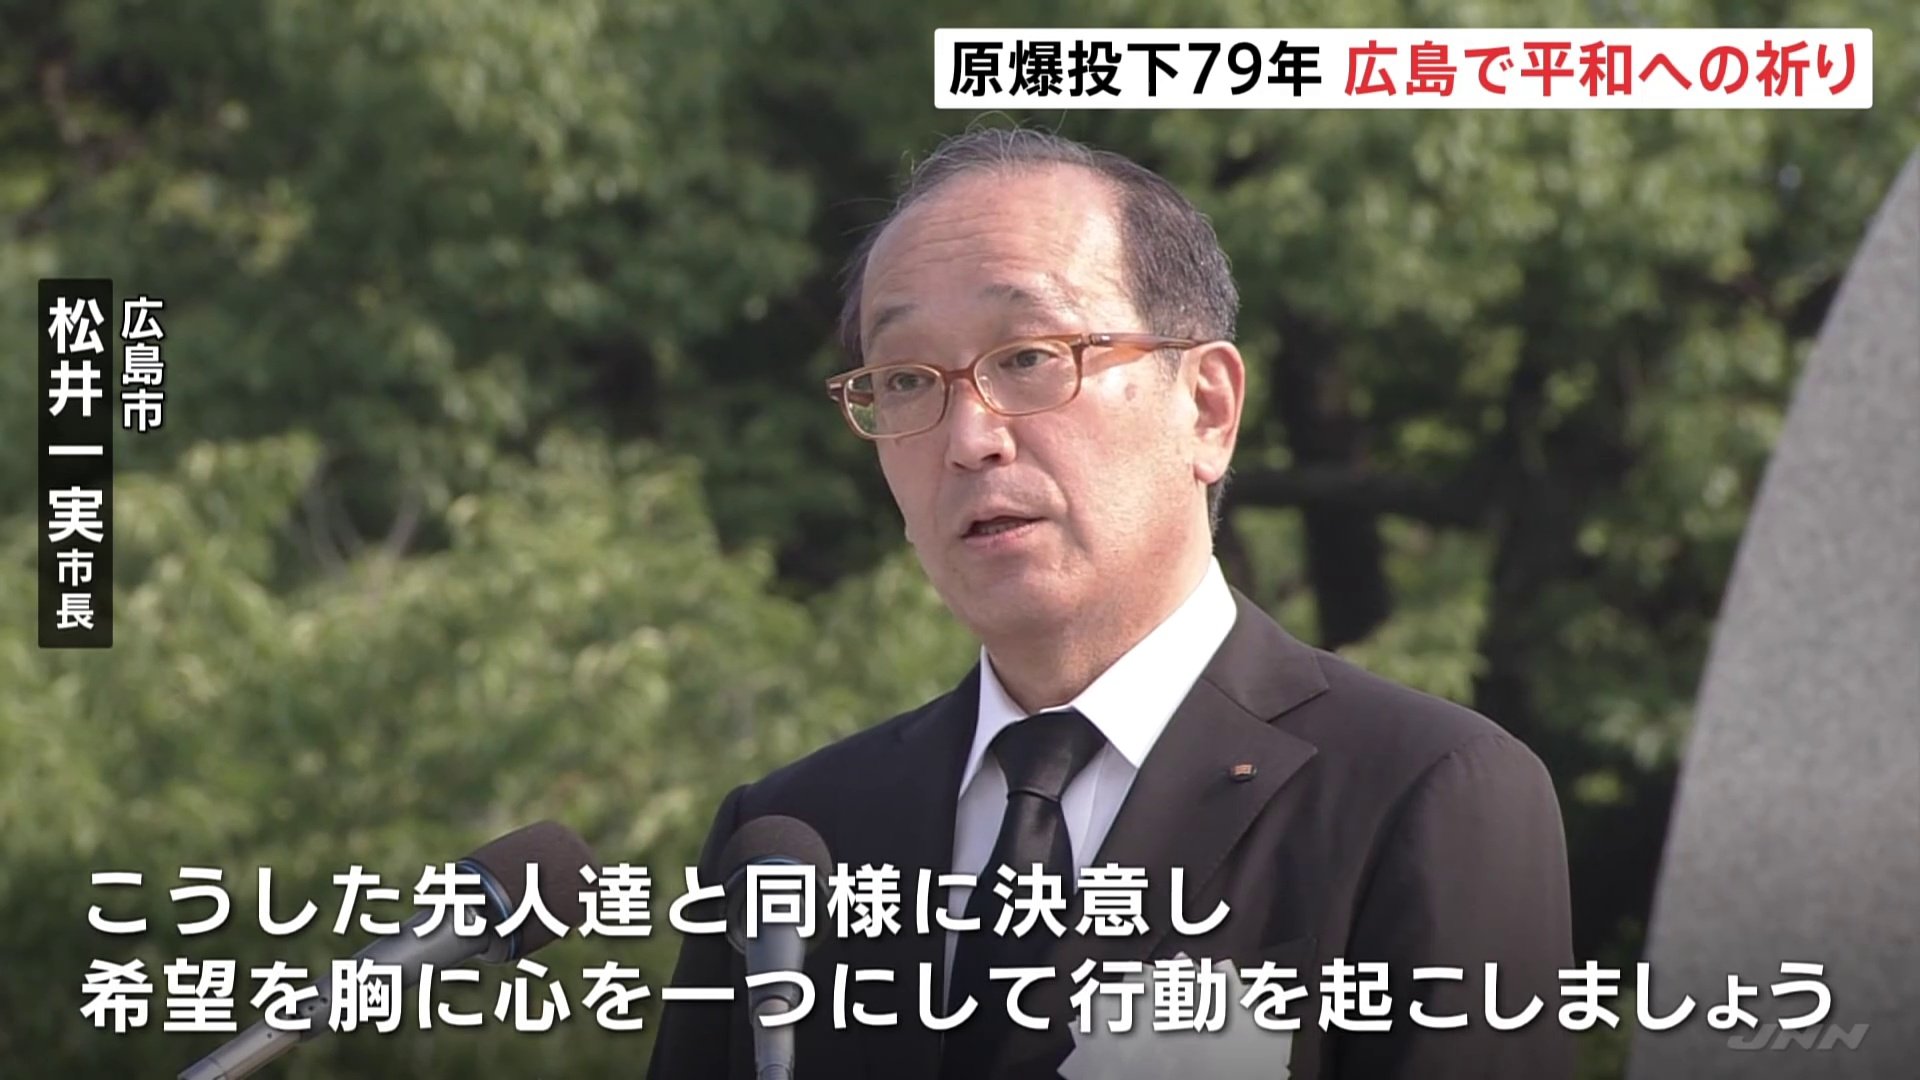 広島市長「希望を胸に心を一つにして行動を起こしましょう」79回目の「原爆の日」 平和記念式典が執り行われる